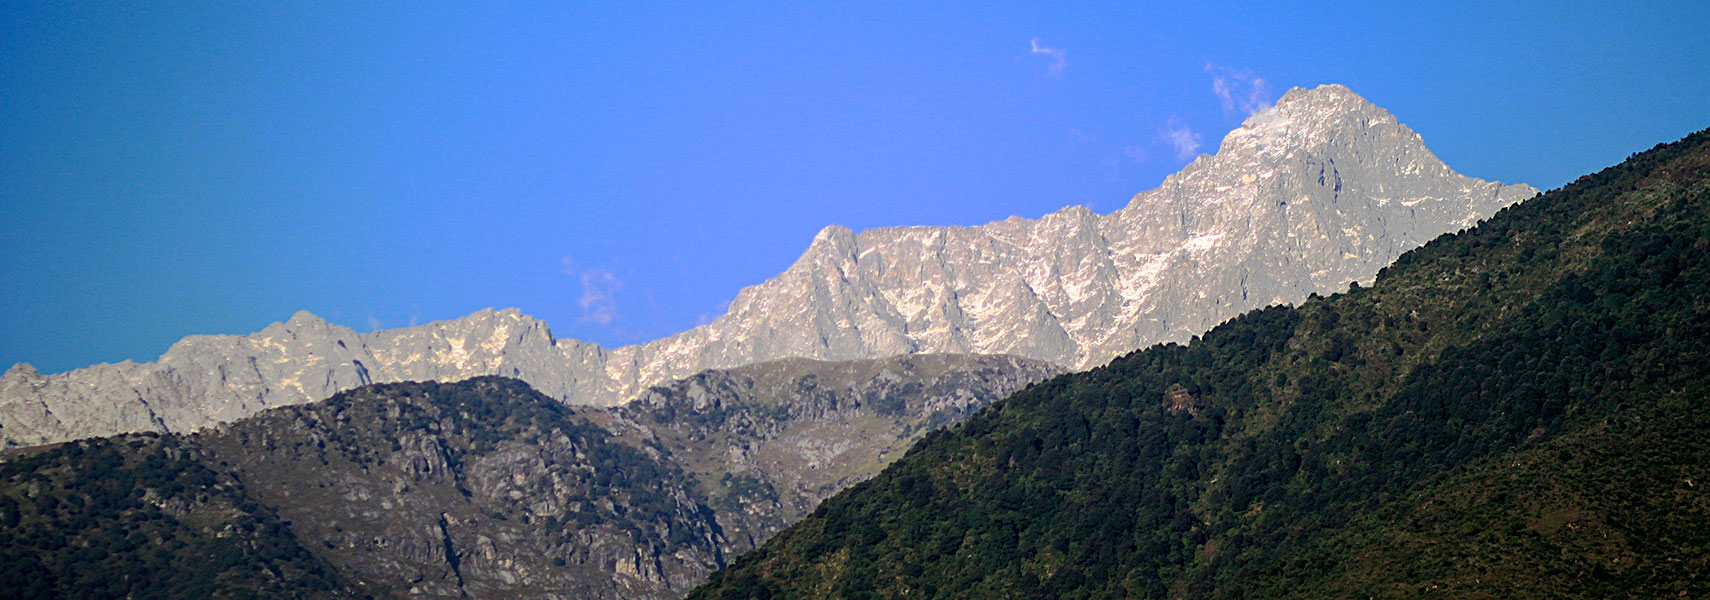 Dhauladhar mountain range, Himachal Pradesh, India